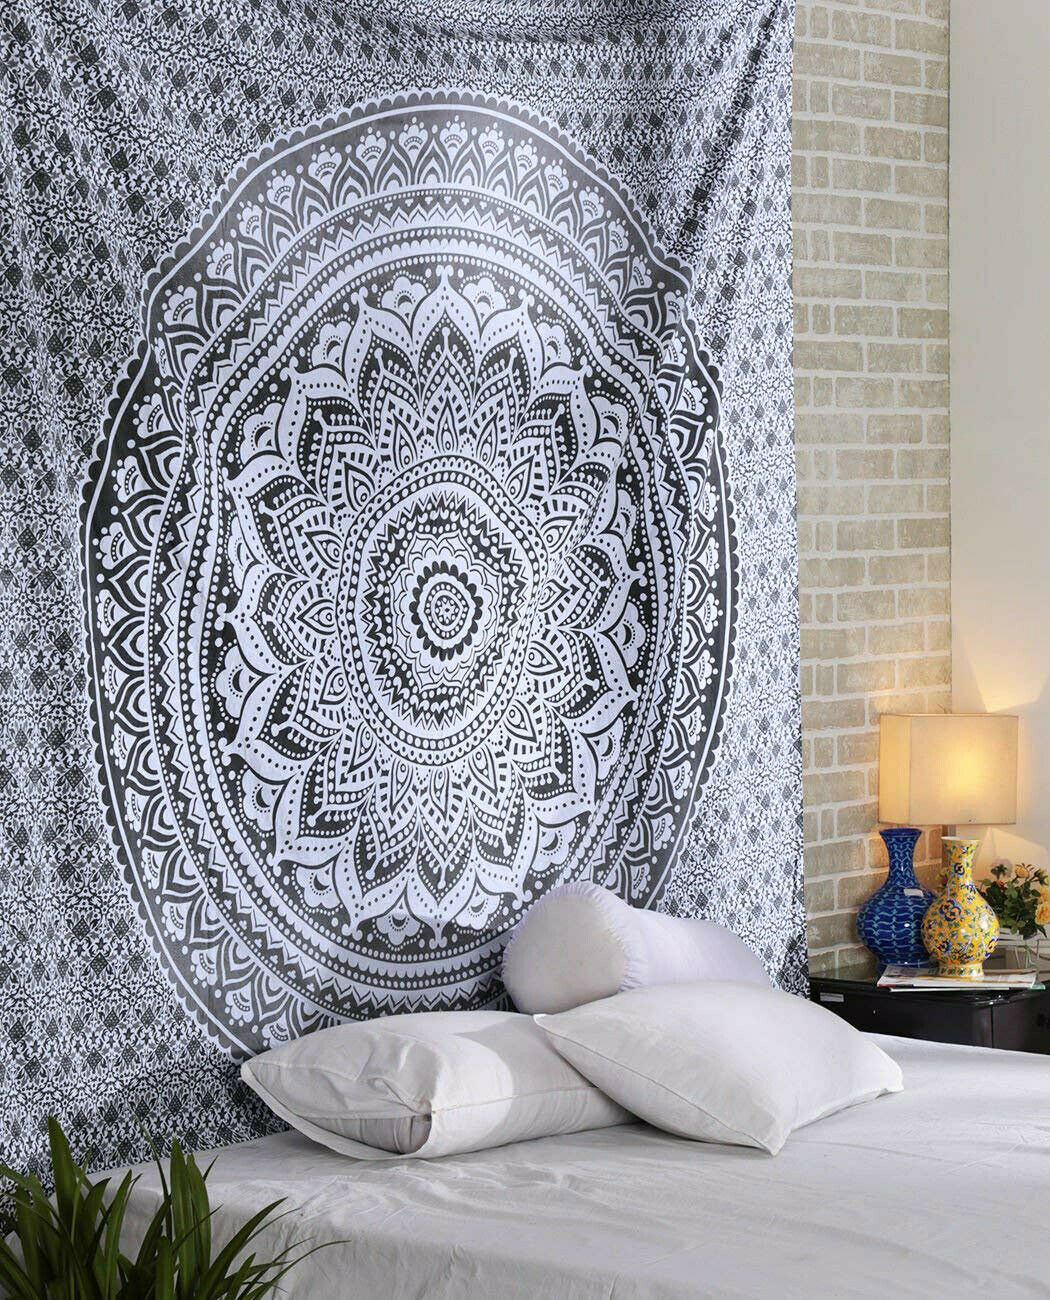 O,200 x 150 cm GLITZFAS Mandala Wandteppich Tapisserie Indische Tuch Böhmische Wandtuch Wandkunst Schlafzimmer